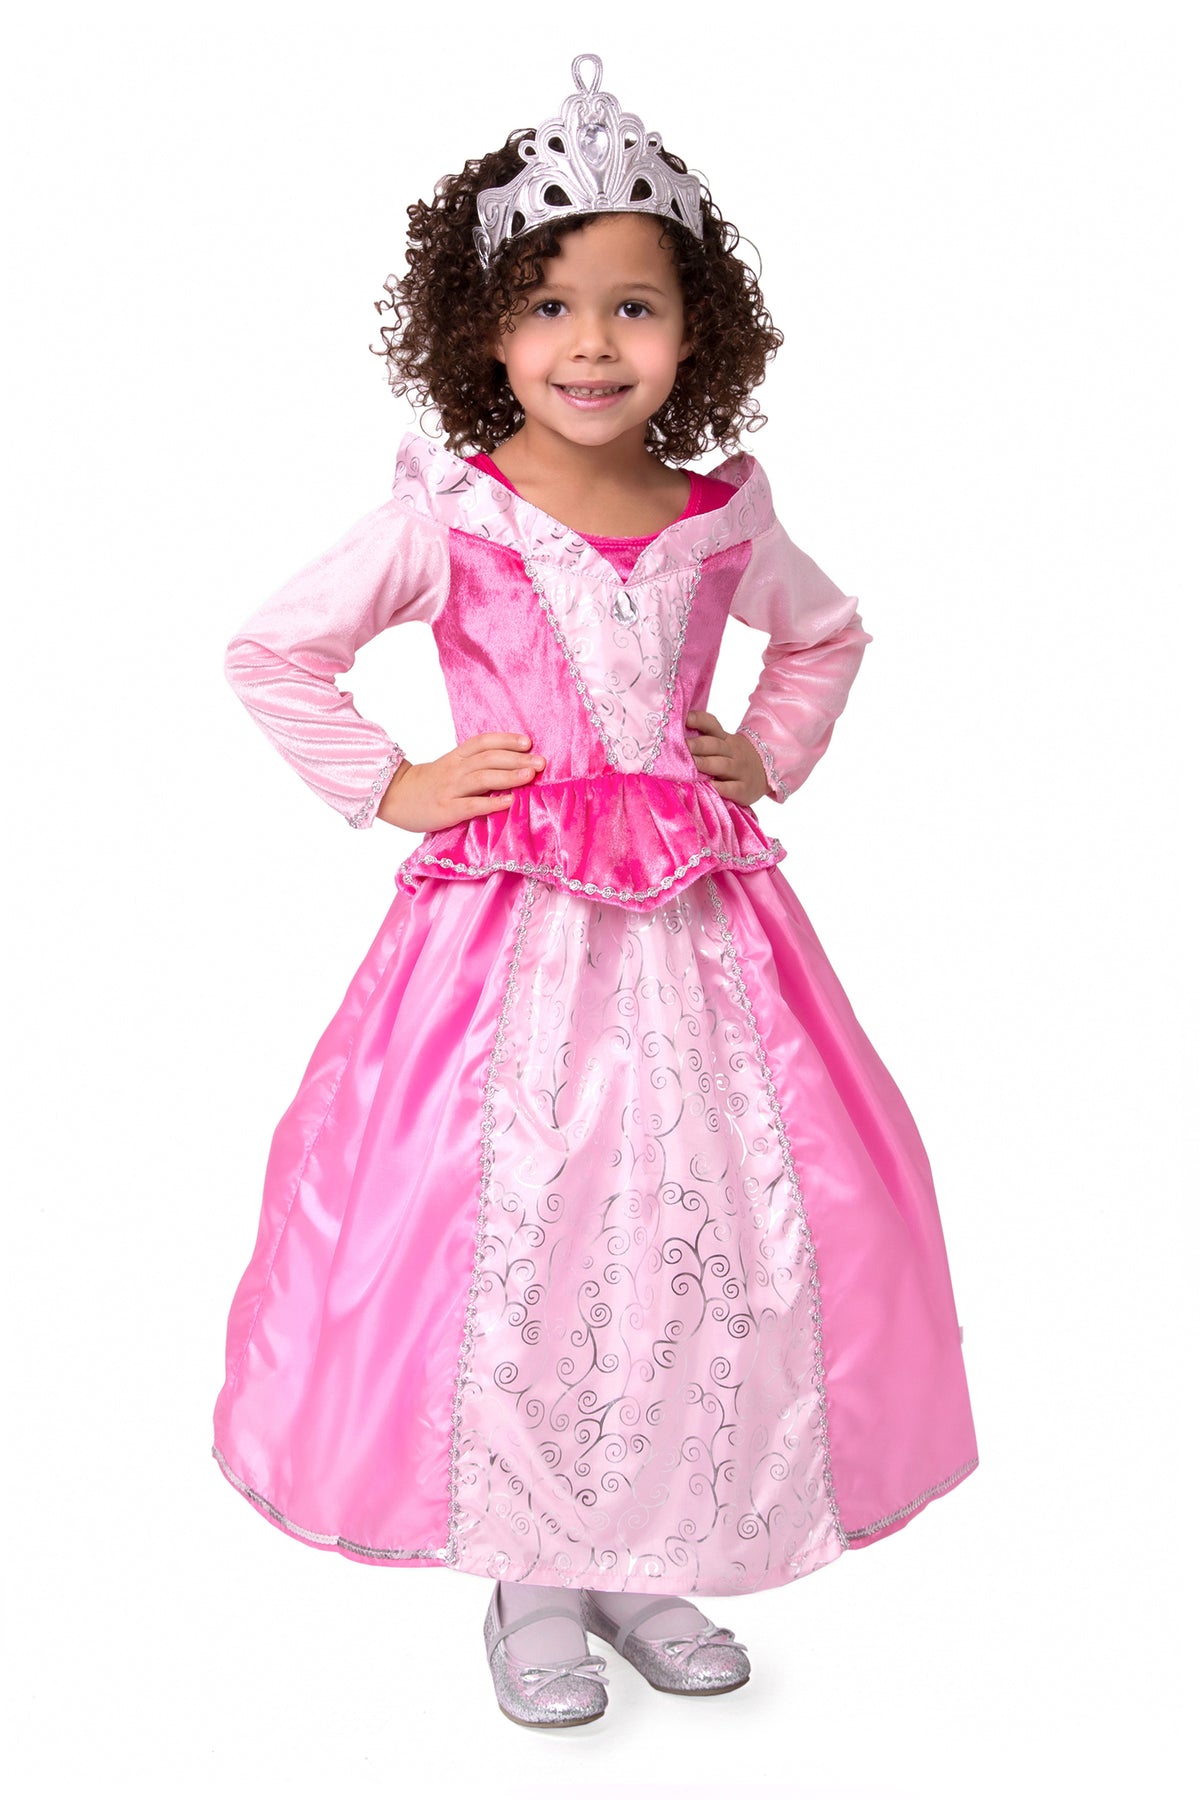 Sleeping Beauty Dress | Princess Dress Up | Little Adventures